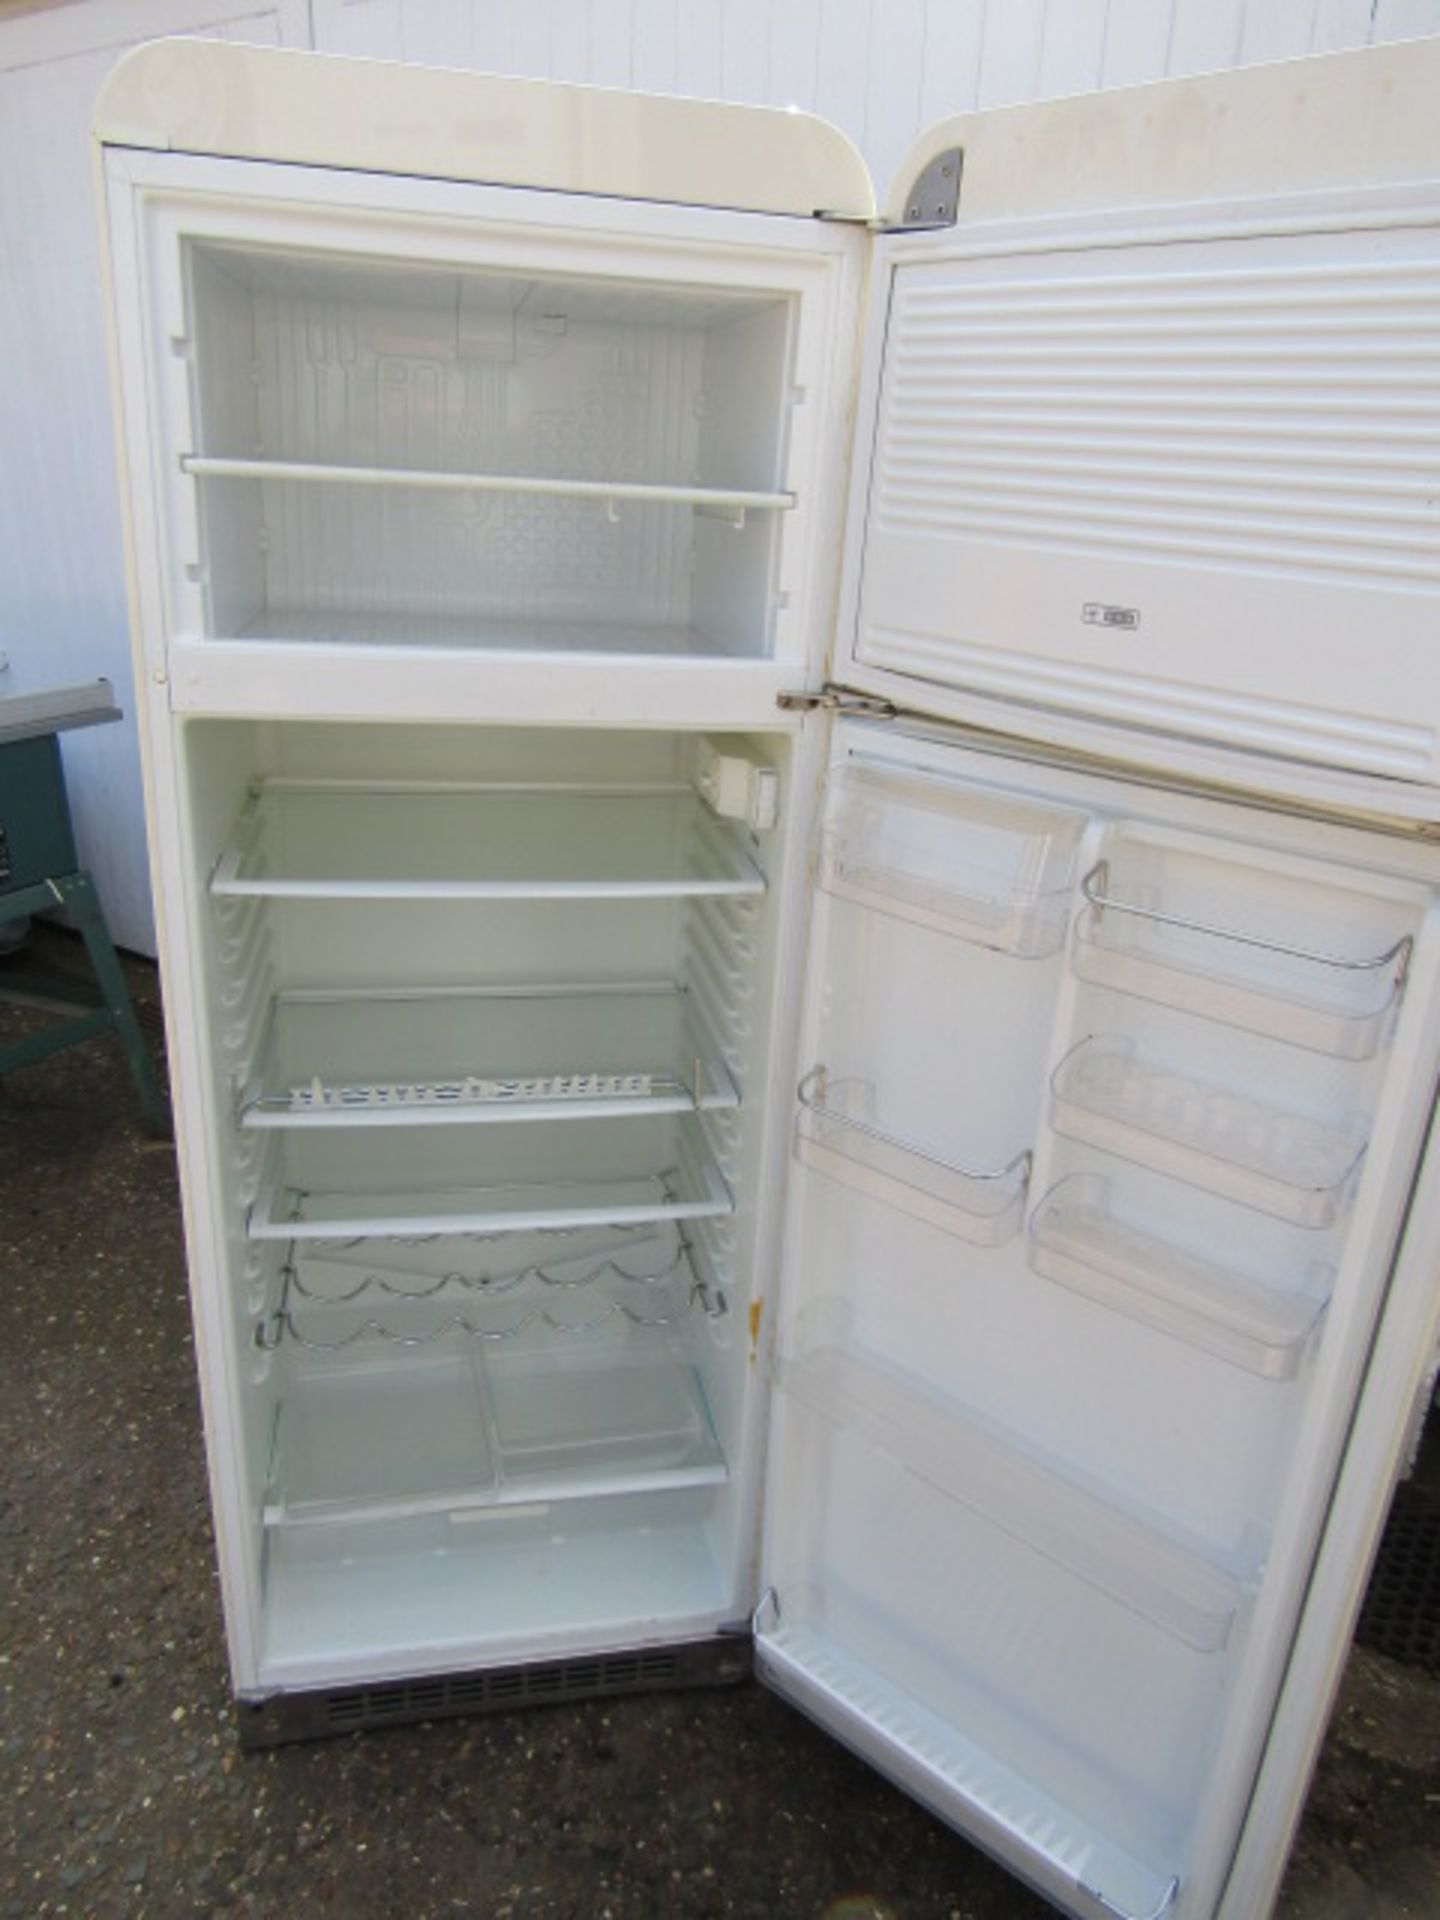 Retro style Smeg fridge freezer - Image 2 of 2